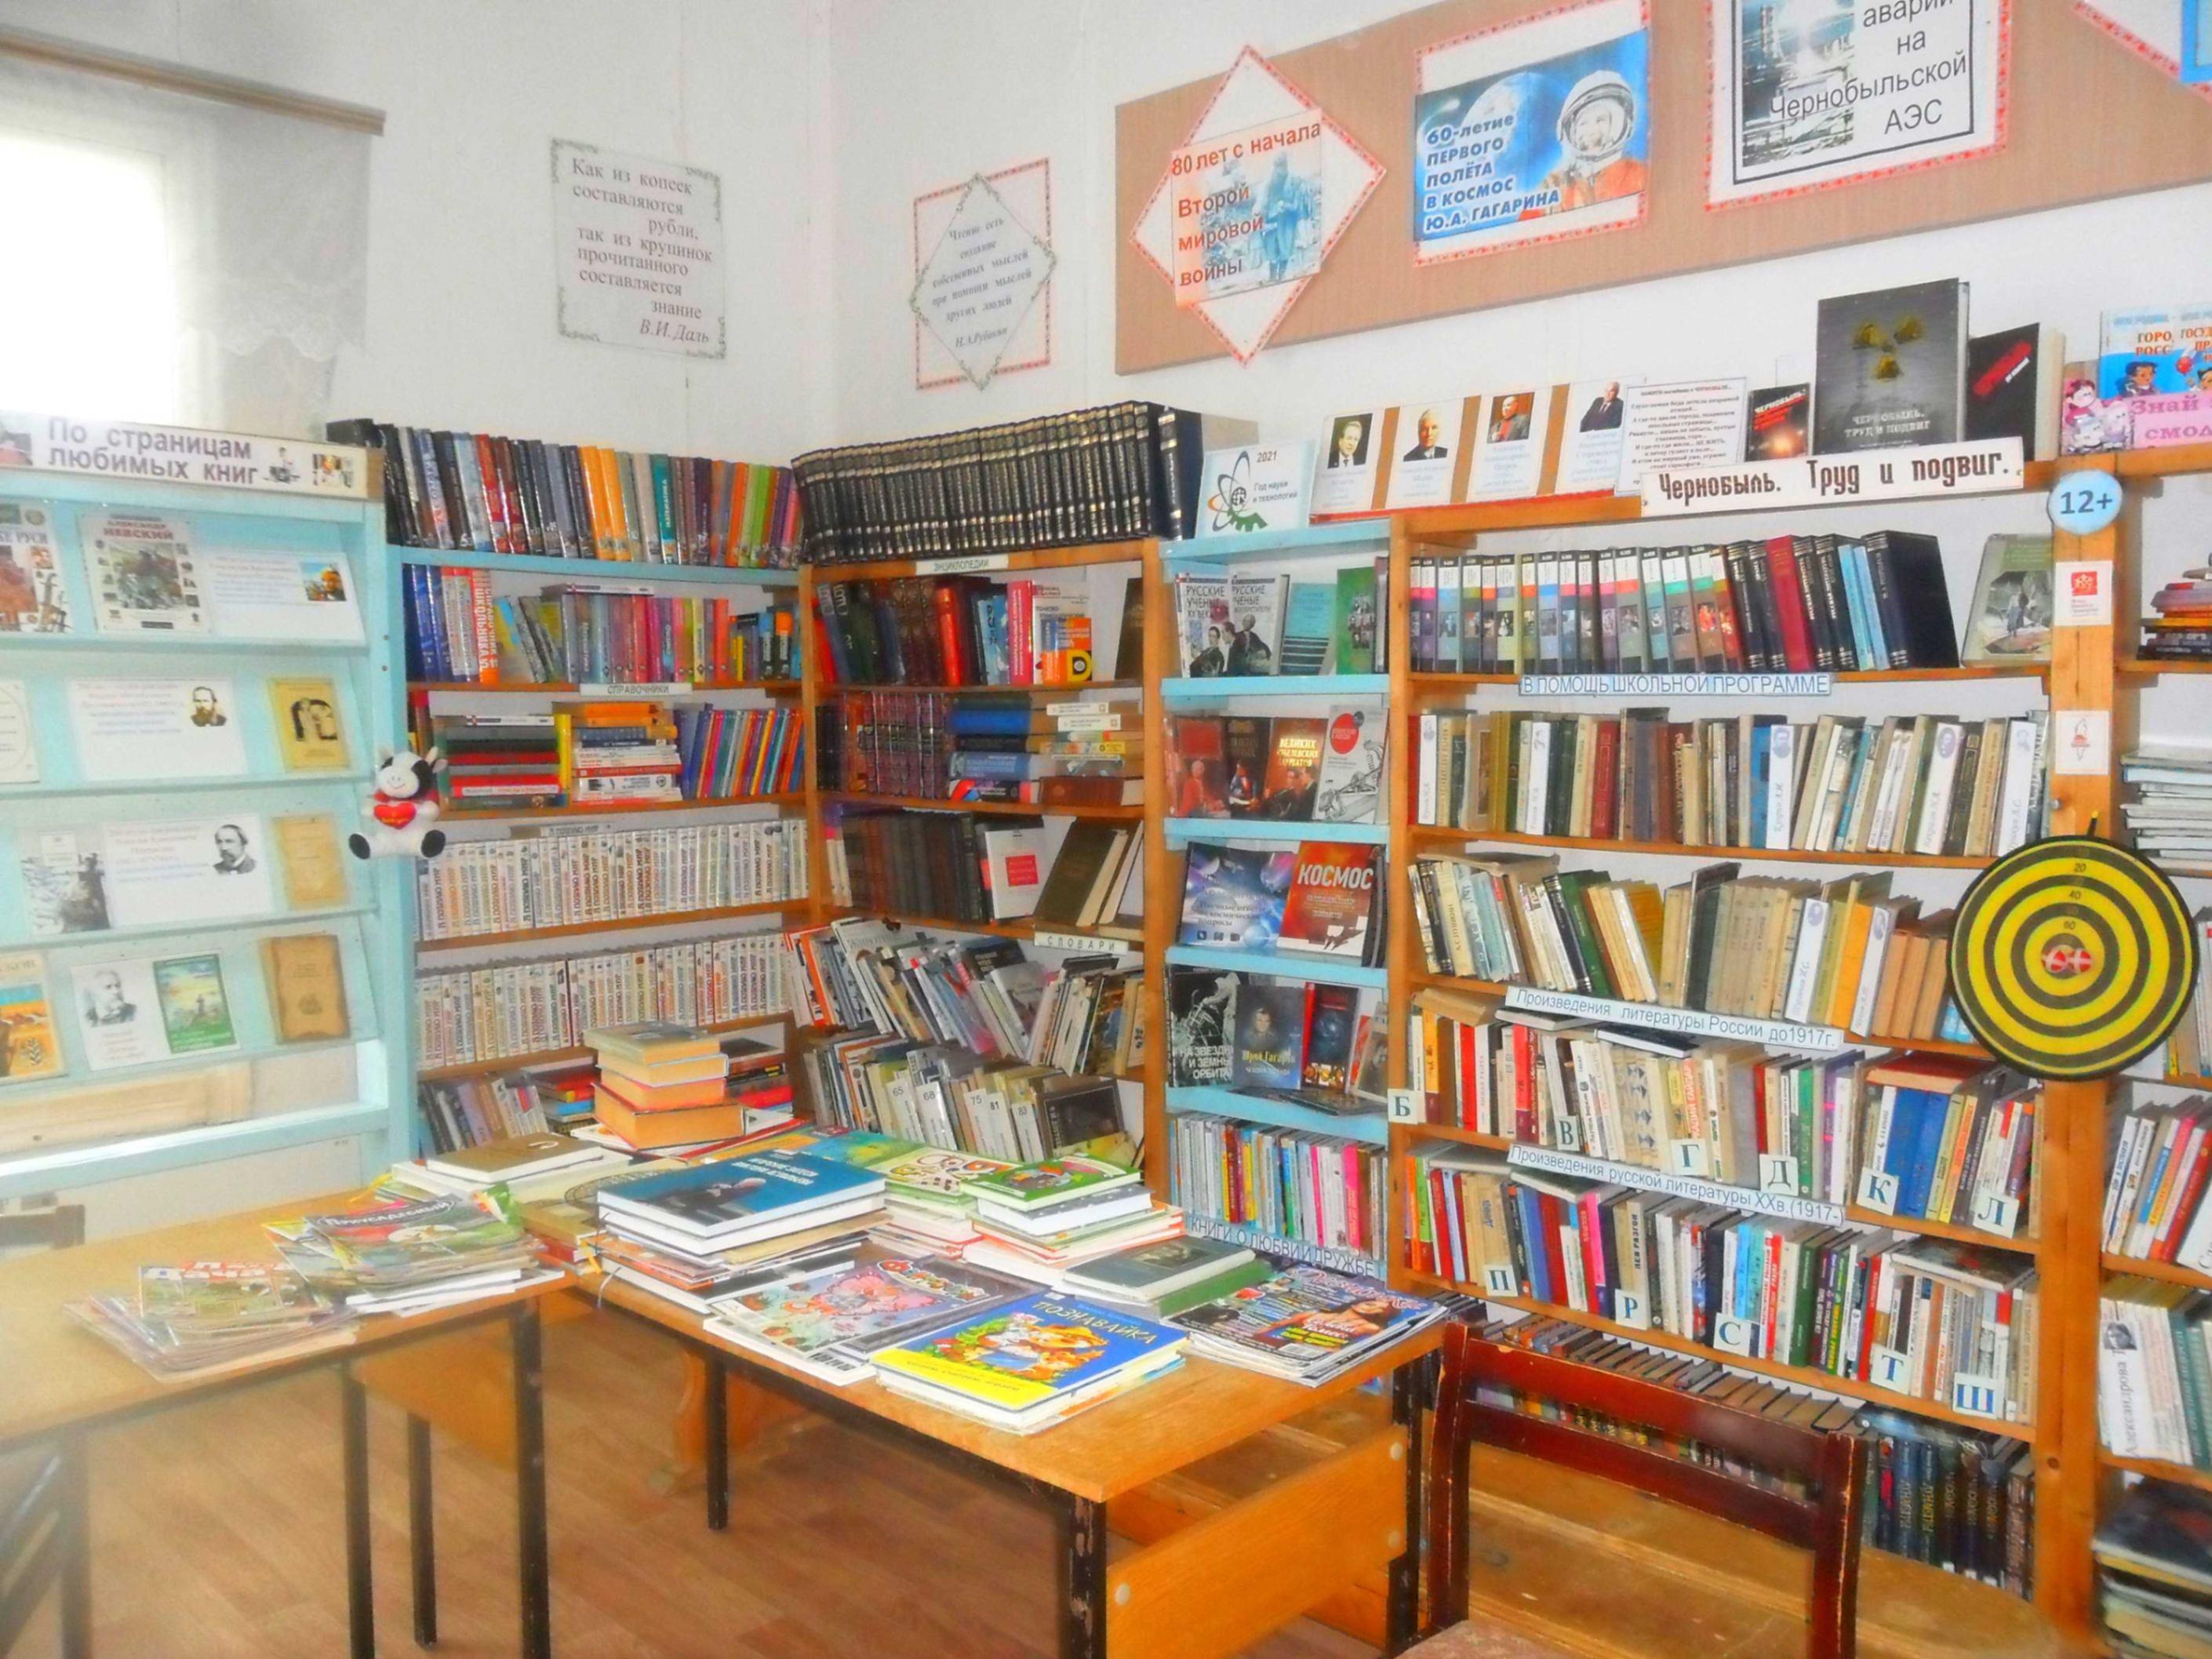 Кытатская сельская библиотека